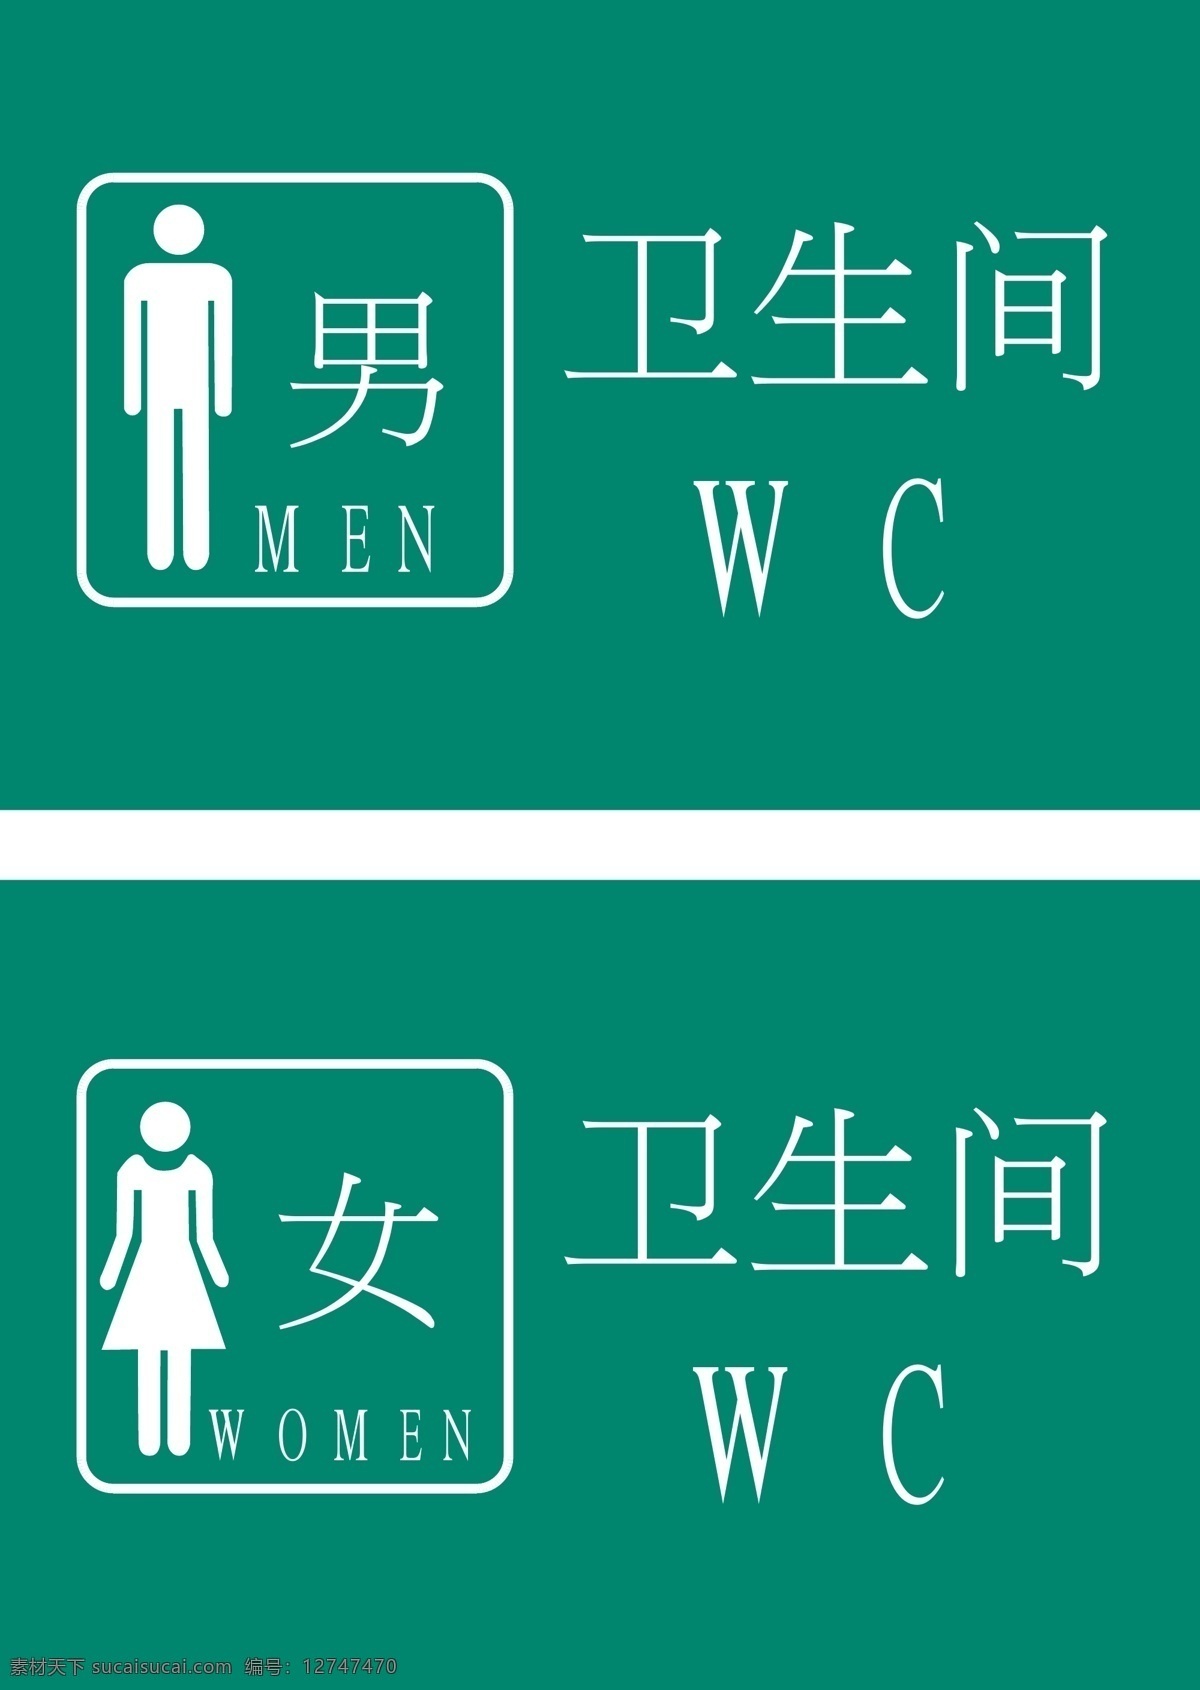 卫生间标志 卫生间 标志 vi系统 厕所标志 卫生间提示标 卫生间提示 厕所提示 wc 男女卫生间 公共标识 男女厕所标志 vi vi设计